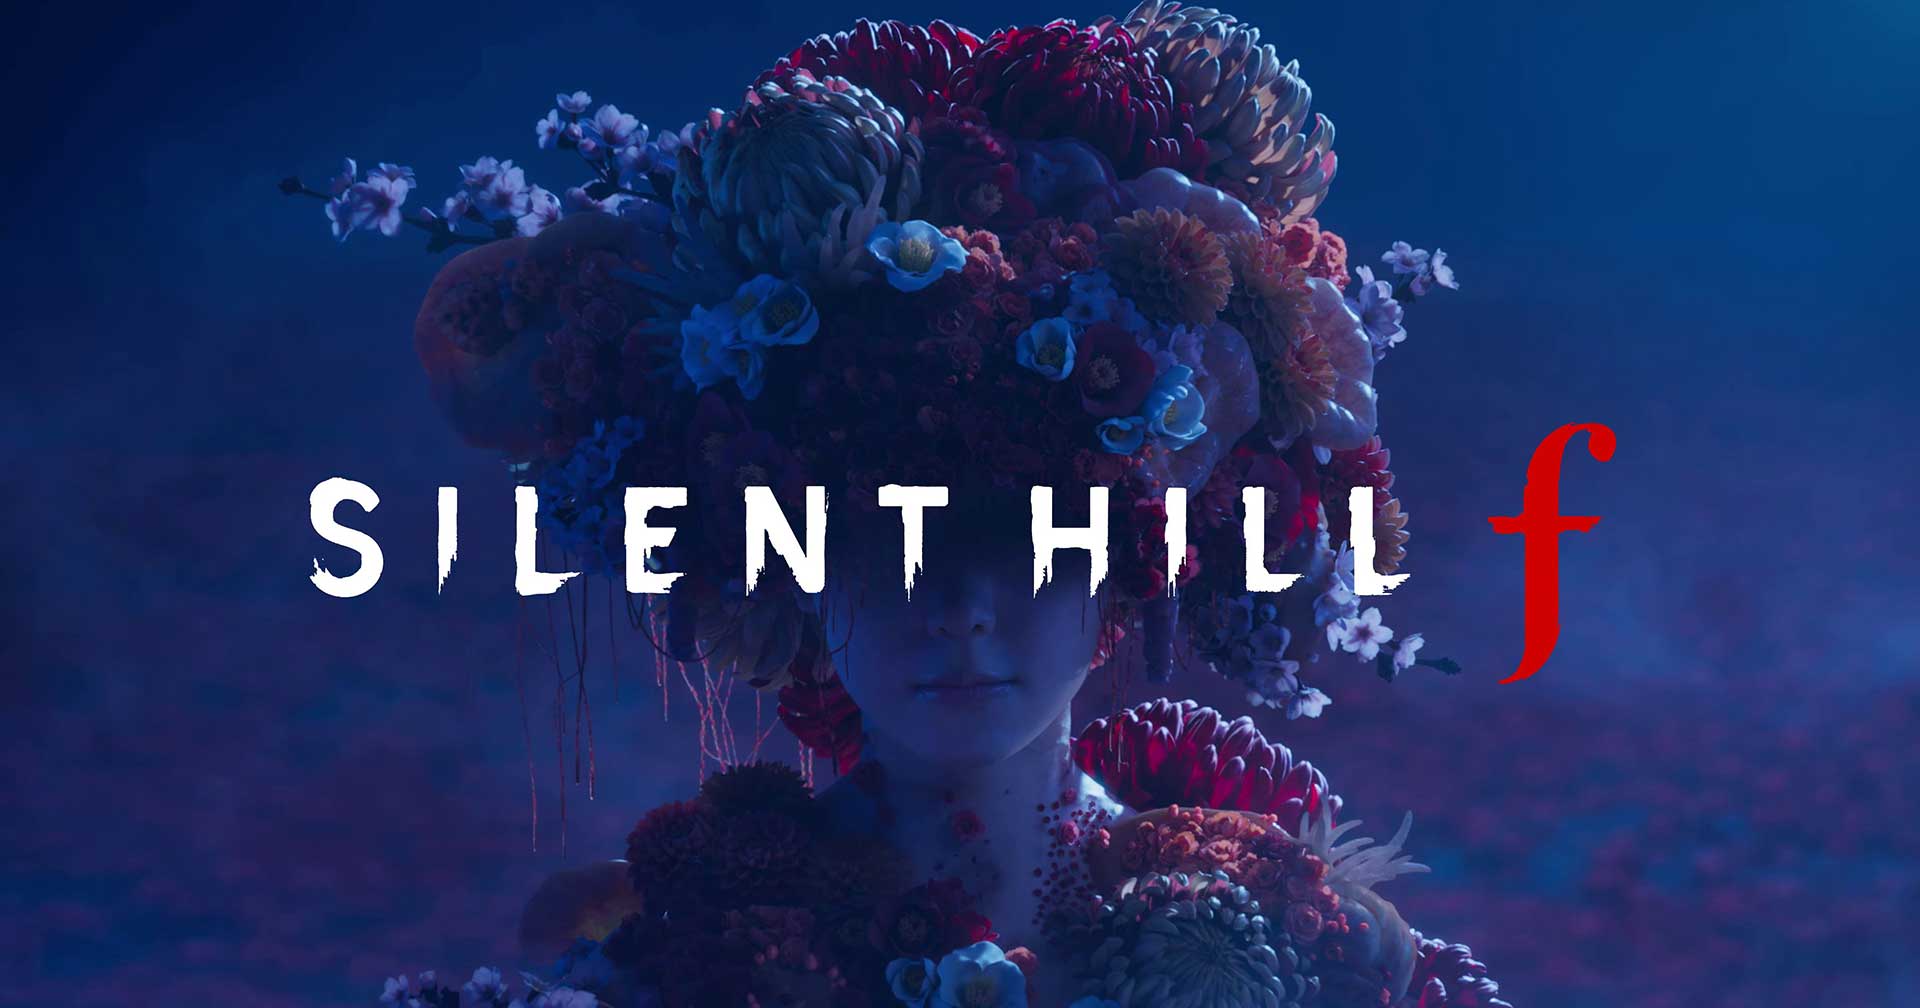 ผู้กำกับ Silent Hill F ถามความเห็นจากแฟน ๆ ว่าตัว f ในชื่อเกมย่อมาจากอะไรอะไร?